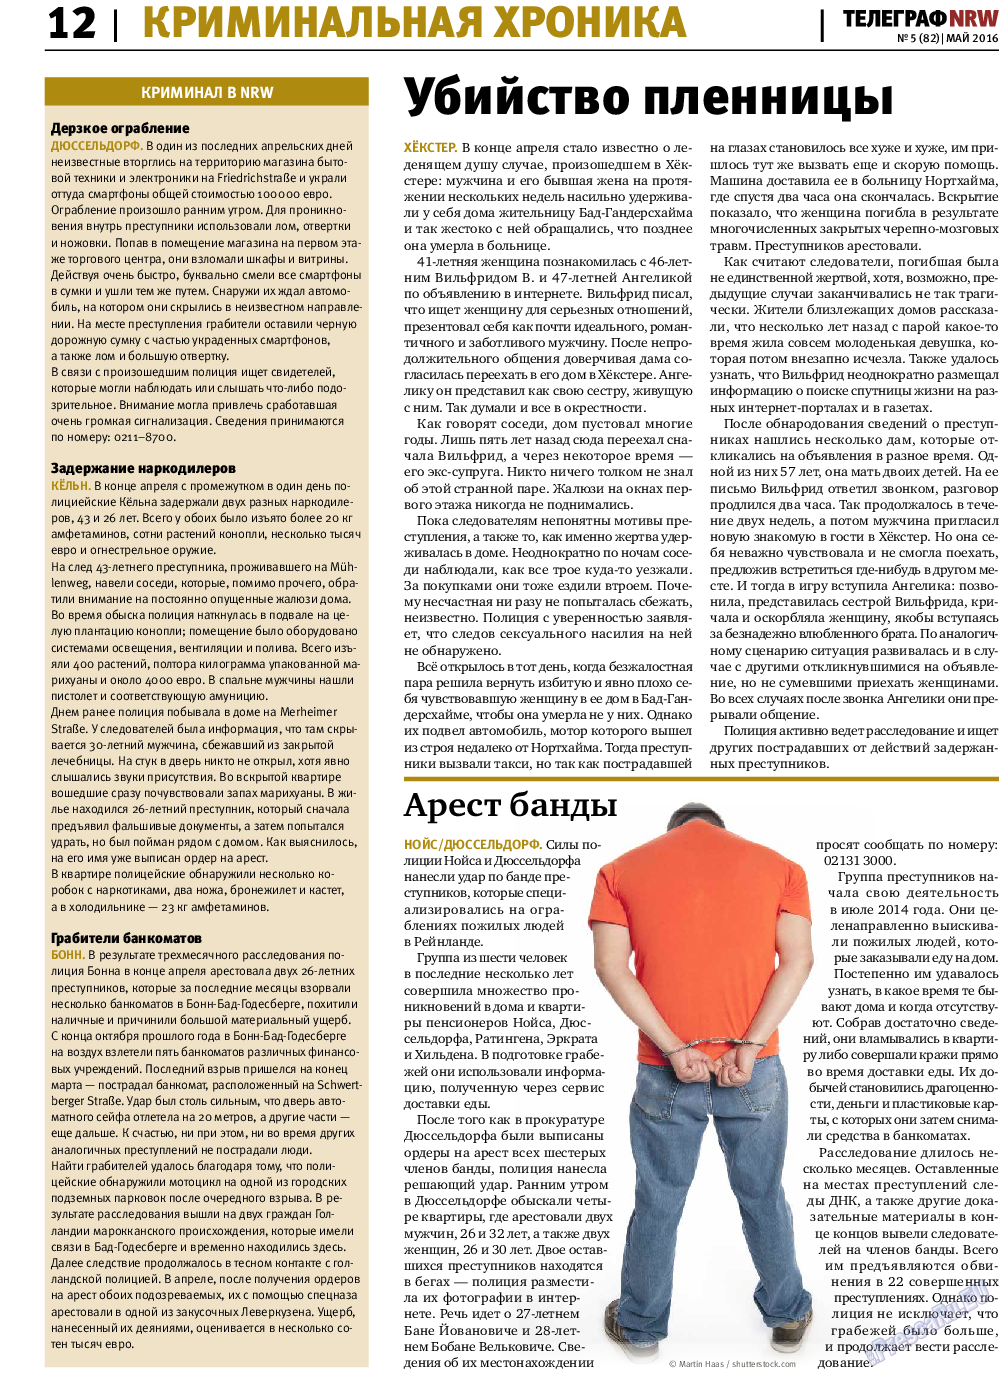 Телеграф NRW (газета). 2016 год, номер 5, стр. 12